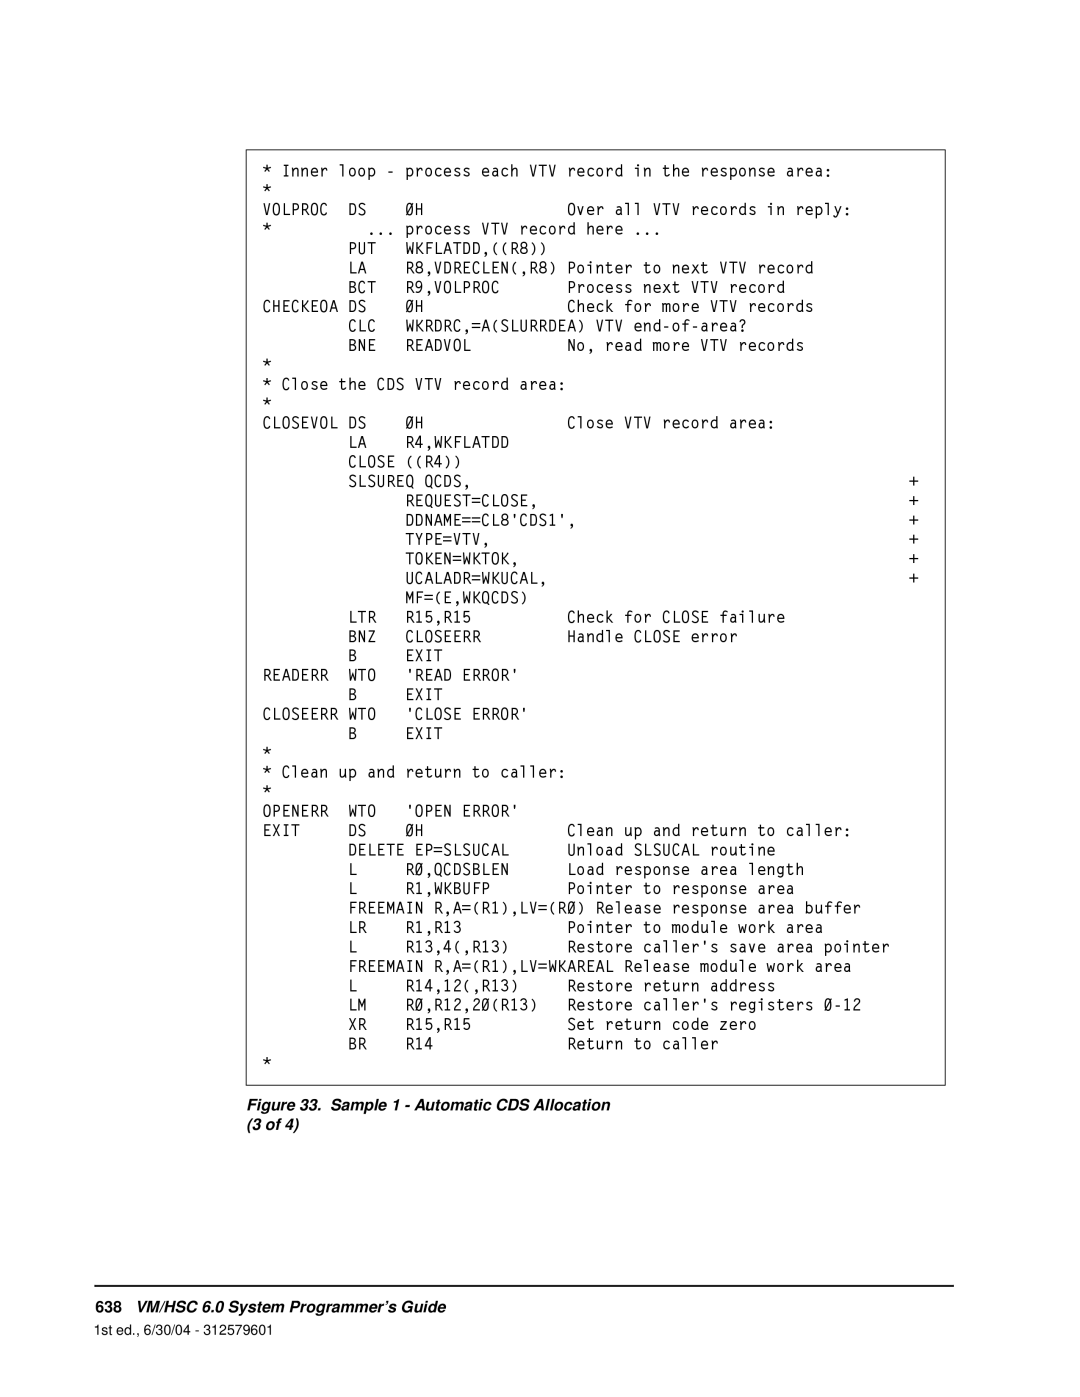 StorageTek manual 638VM/HSC 6.0 System Programmer’s Guide 